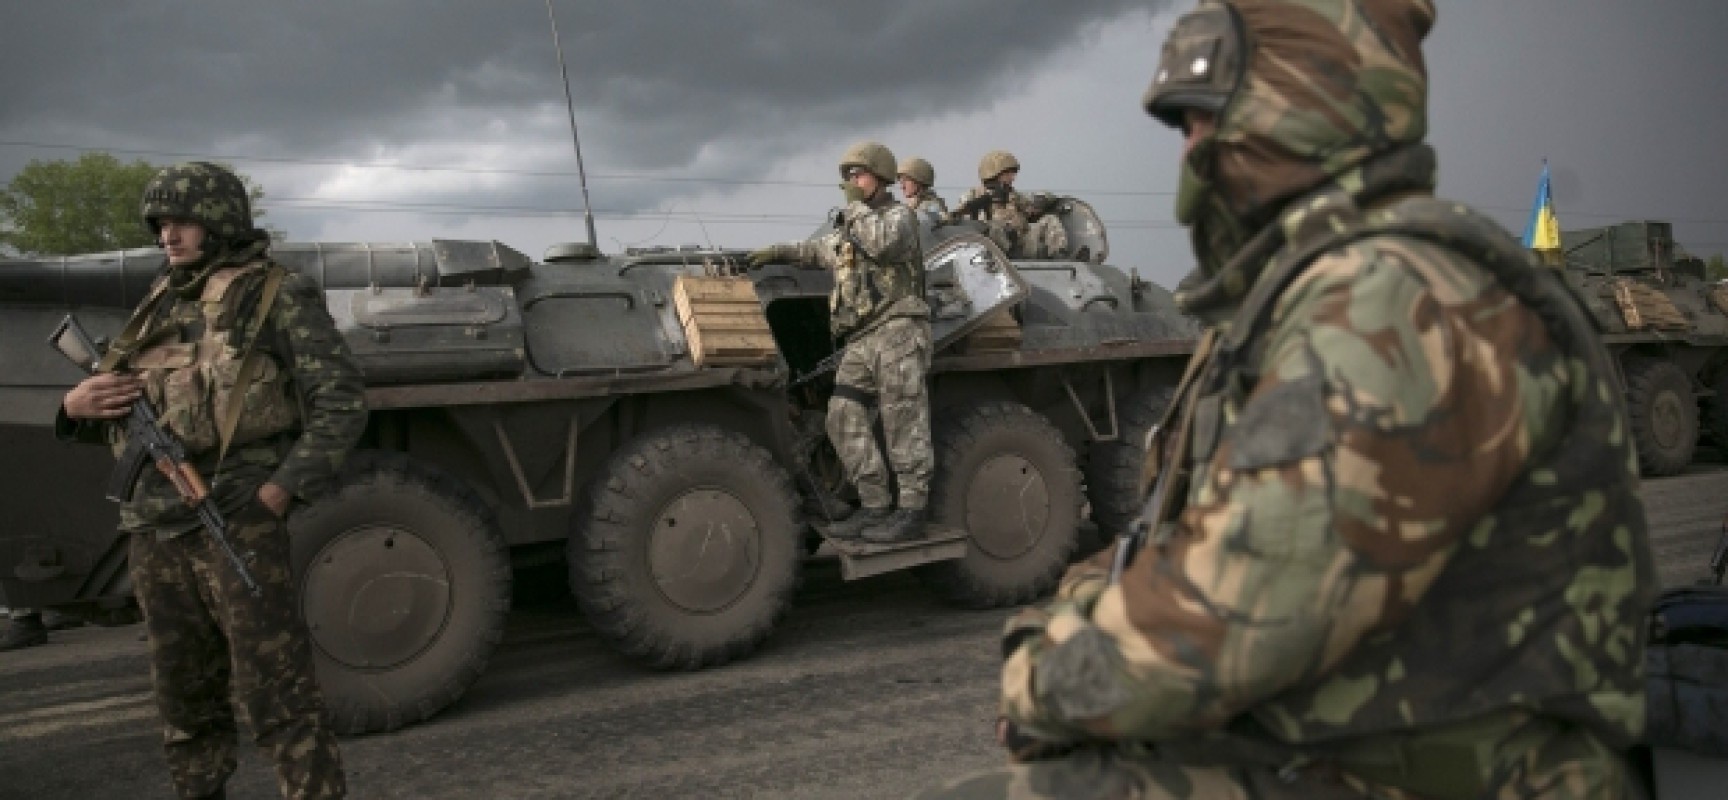 Об этом говорят: Объявленное перемирие вызвано огромными потерями российской армии